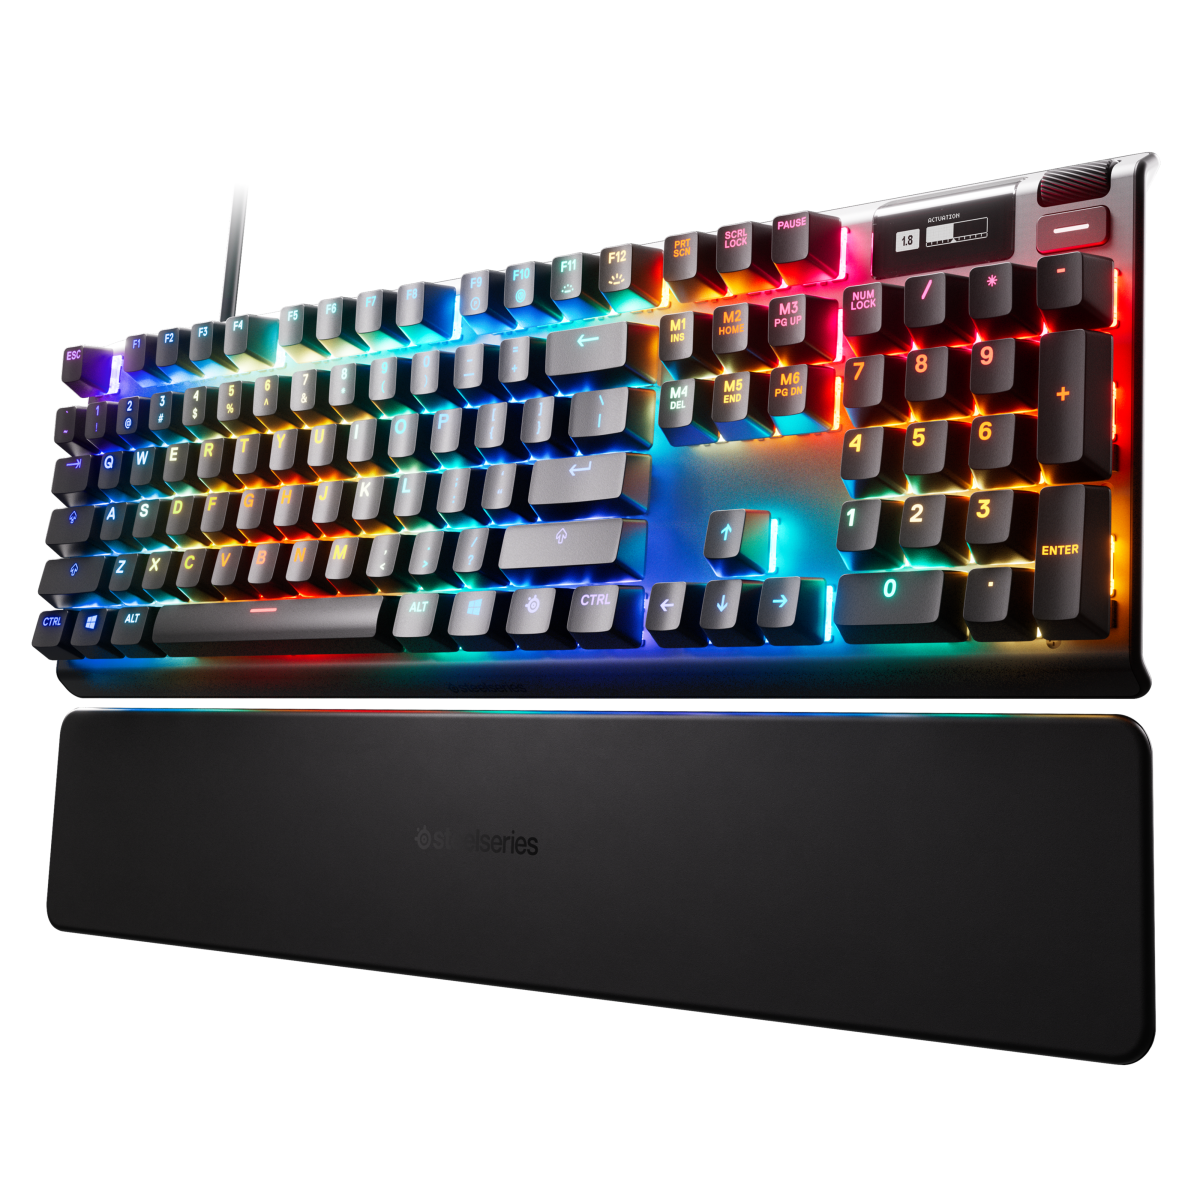 SteelSeries Apex Pro HyperMagnetic Gaming-Tastatur - weltweit schnellste Tastatur mit einstellbarer Betätigung von SteelSeries